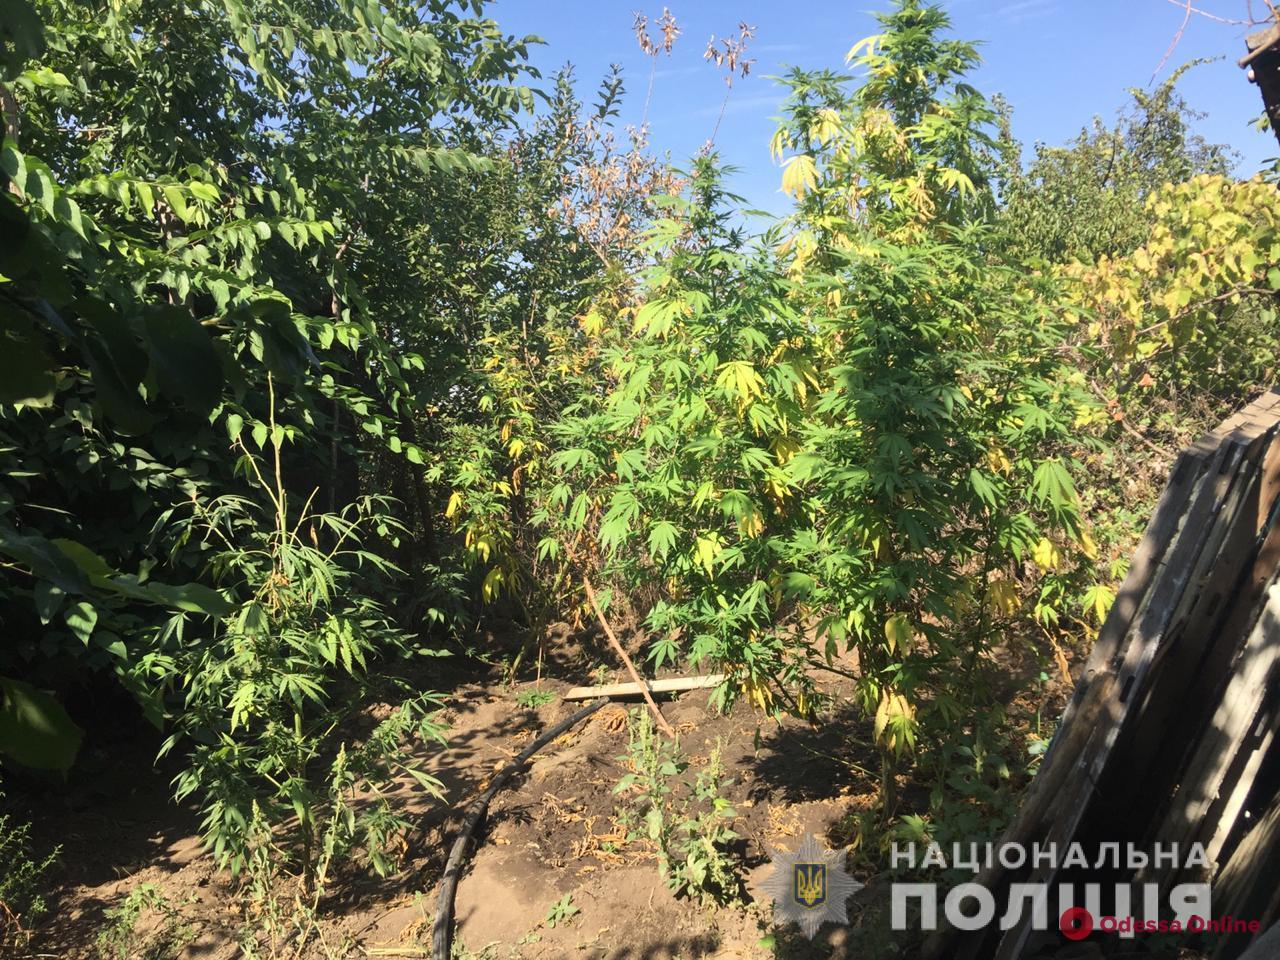 Выращивал для себя: у жителя Одесской области на огороде обнаружили наркоплантацию